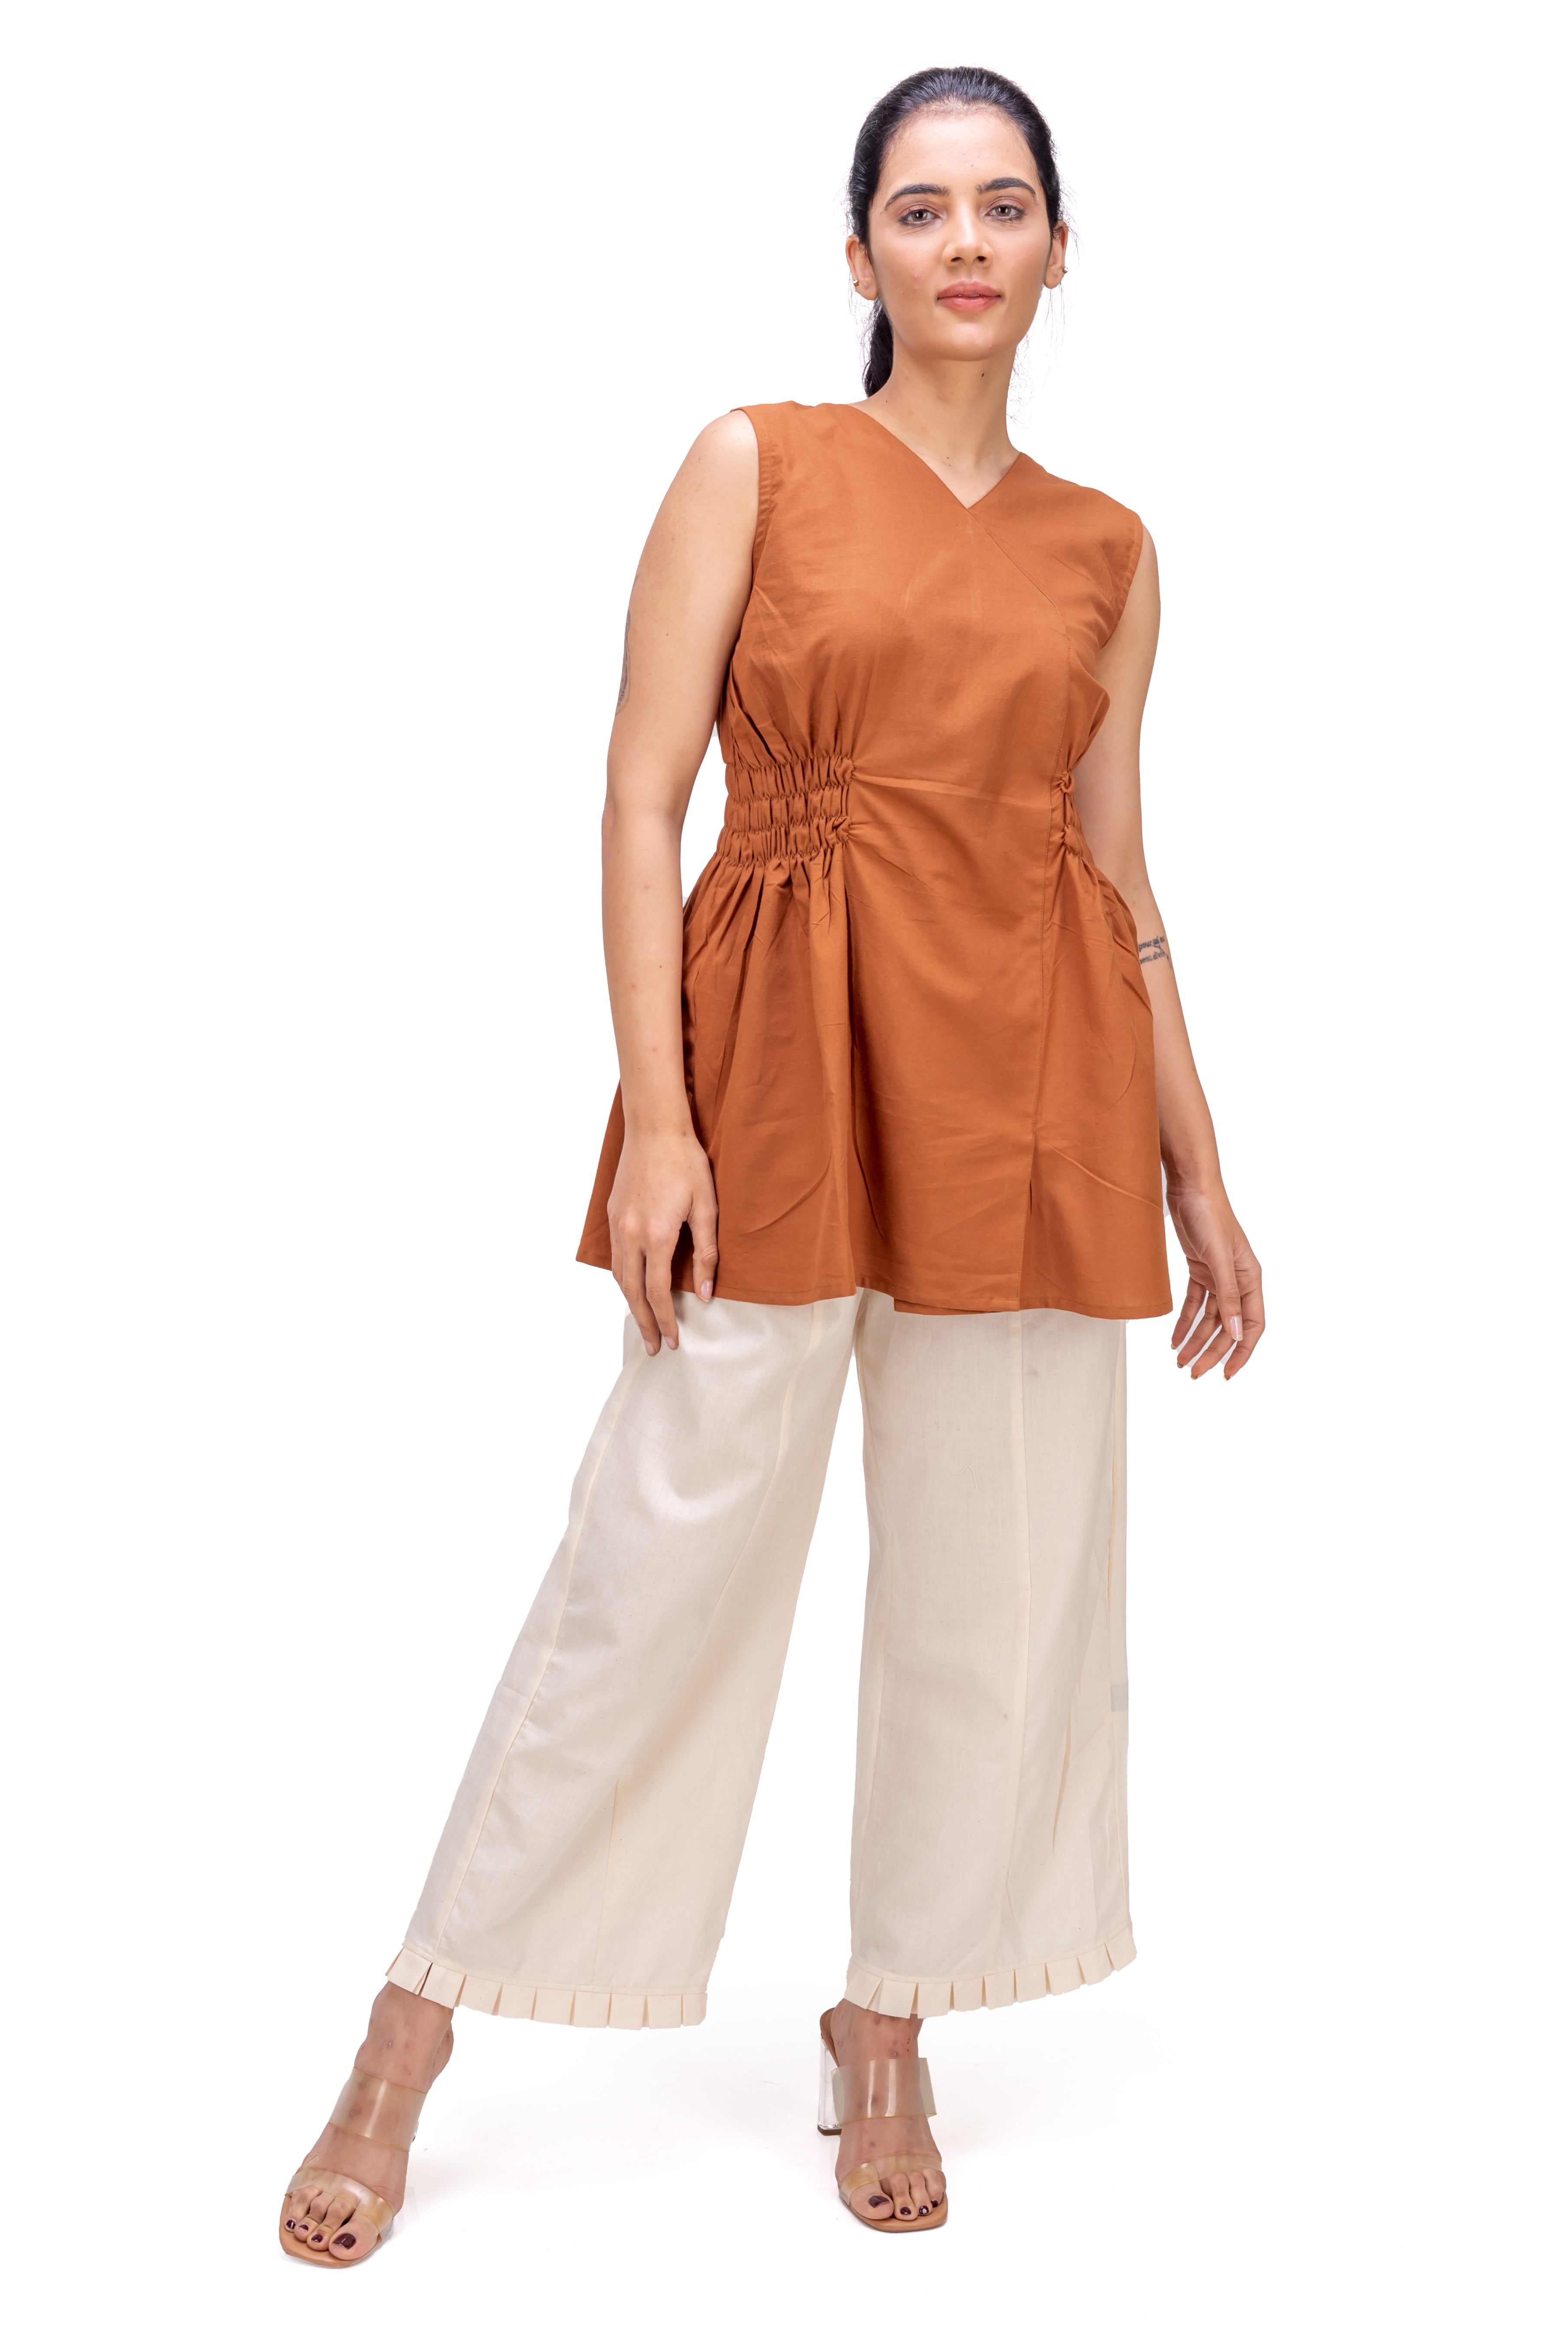 409-405 White Lotus "Shirle" women's Shift Dress/Top